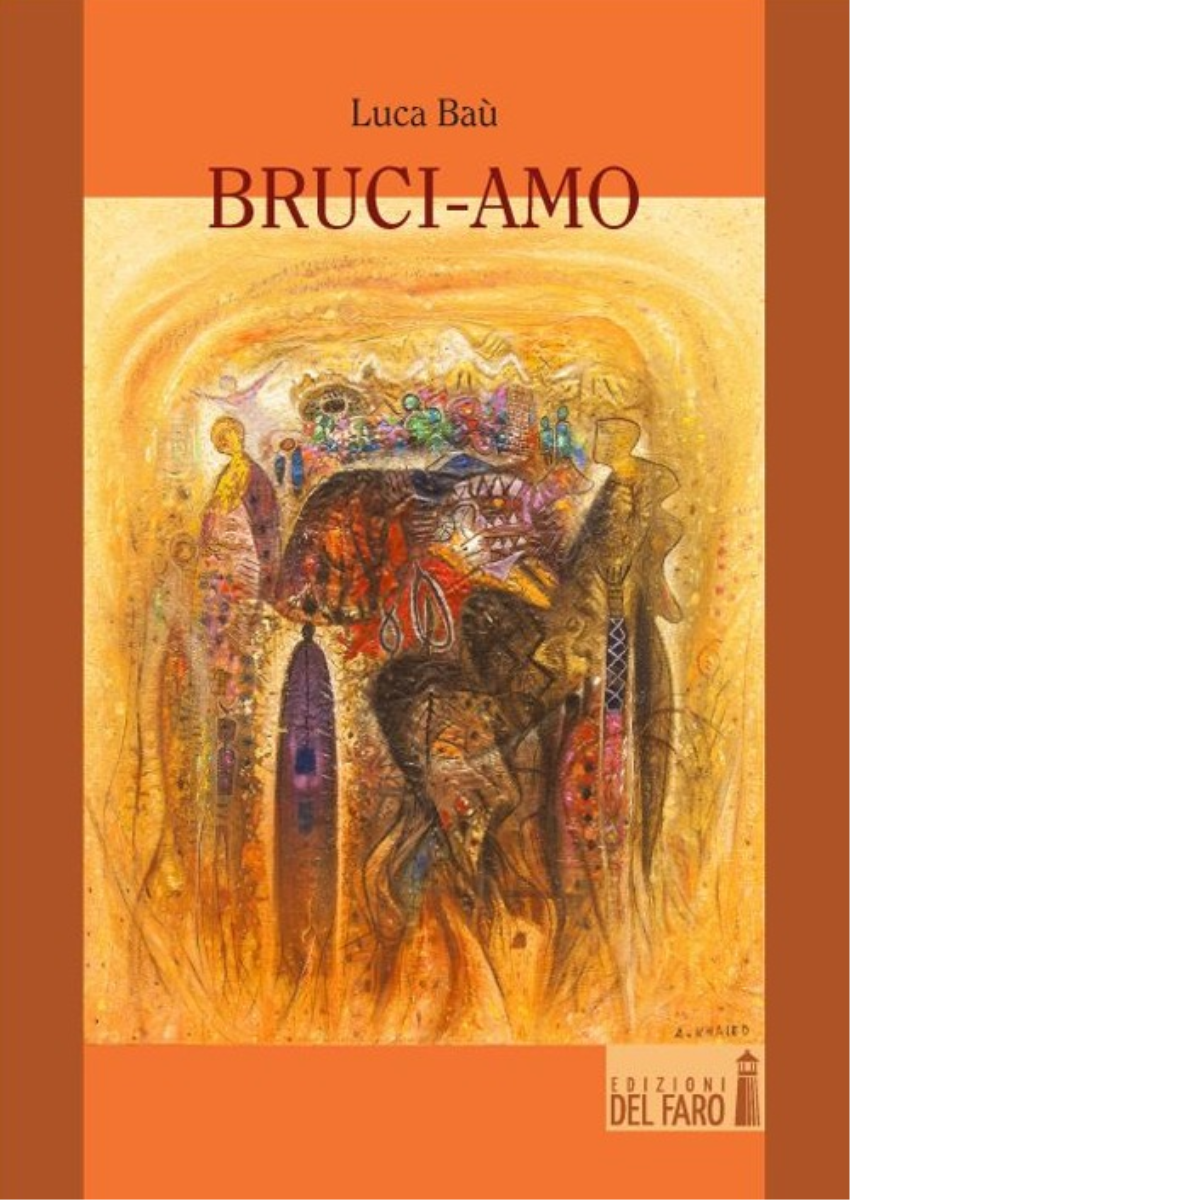 Bruci-amo di Ba? Luca - Edizioni Del Faro, 2014